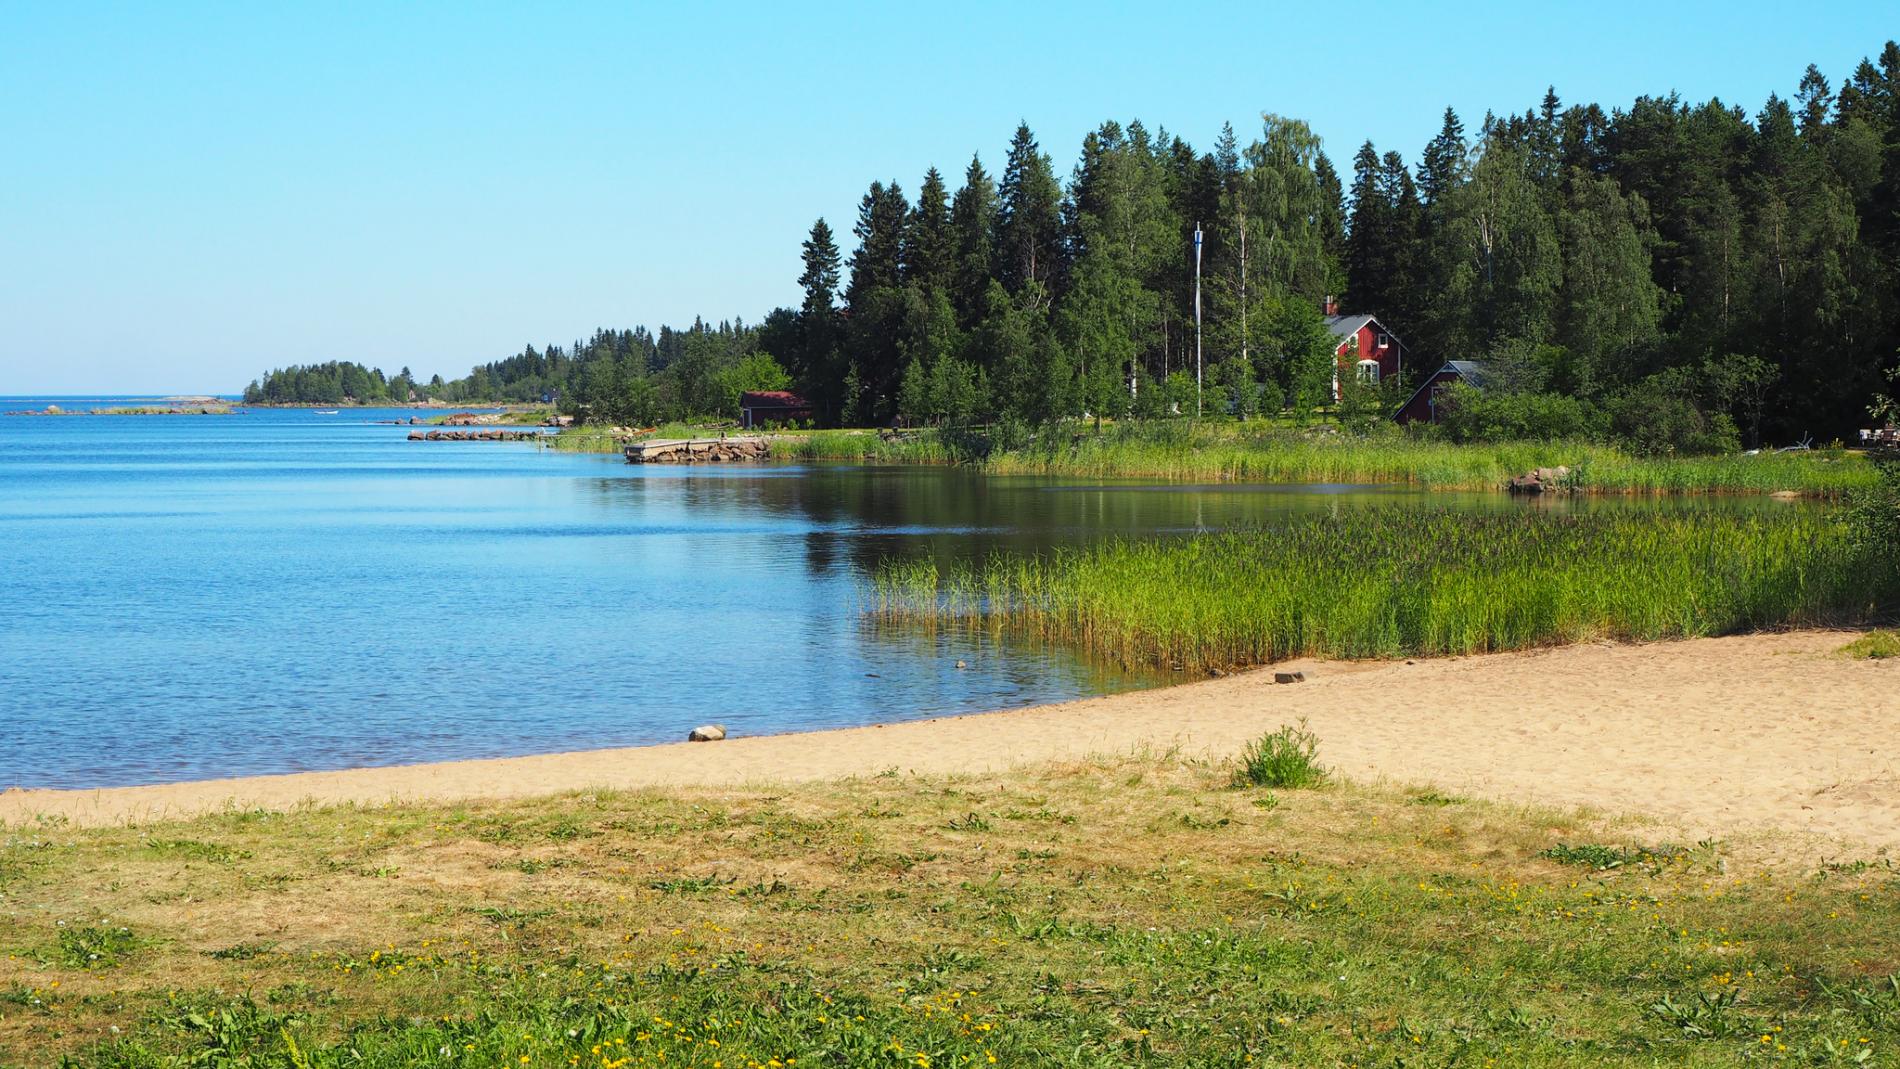 Uimaranta Kylmäniemessä on suojainen ja kauniisti karu. Kuva: Henri Ylikulju.